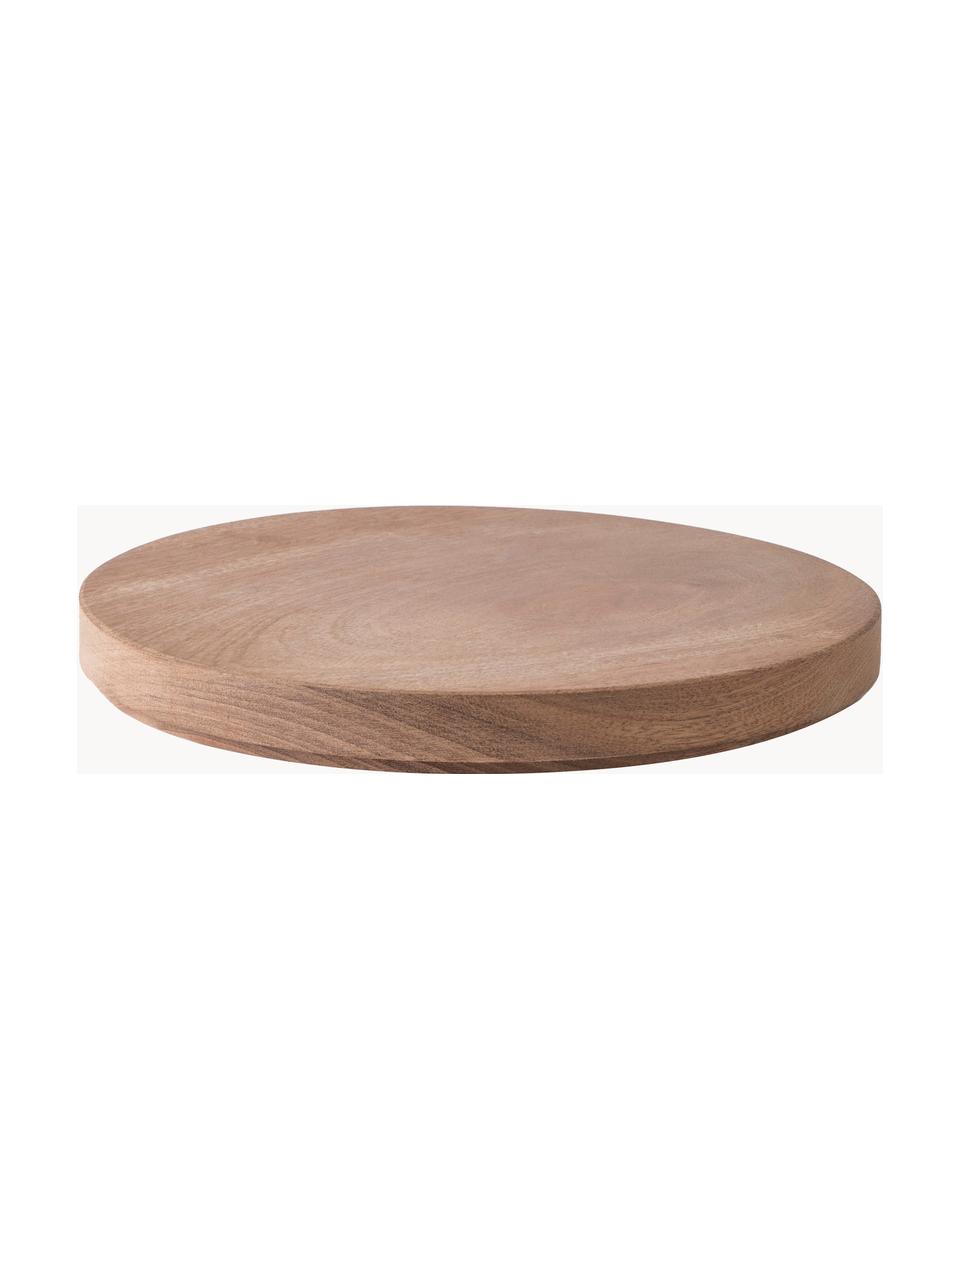 Víčko z mahagonového dřeva ABCT, různé velikosti, Mahagonové dřevo, Mahagonové dřevo, Ø 24 cm, V 3 cm